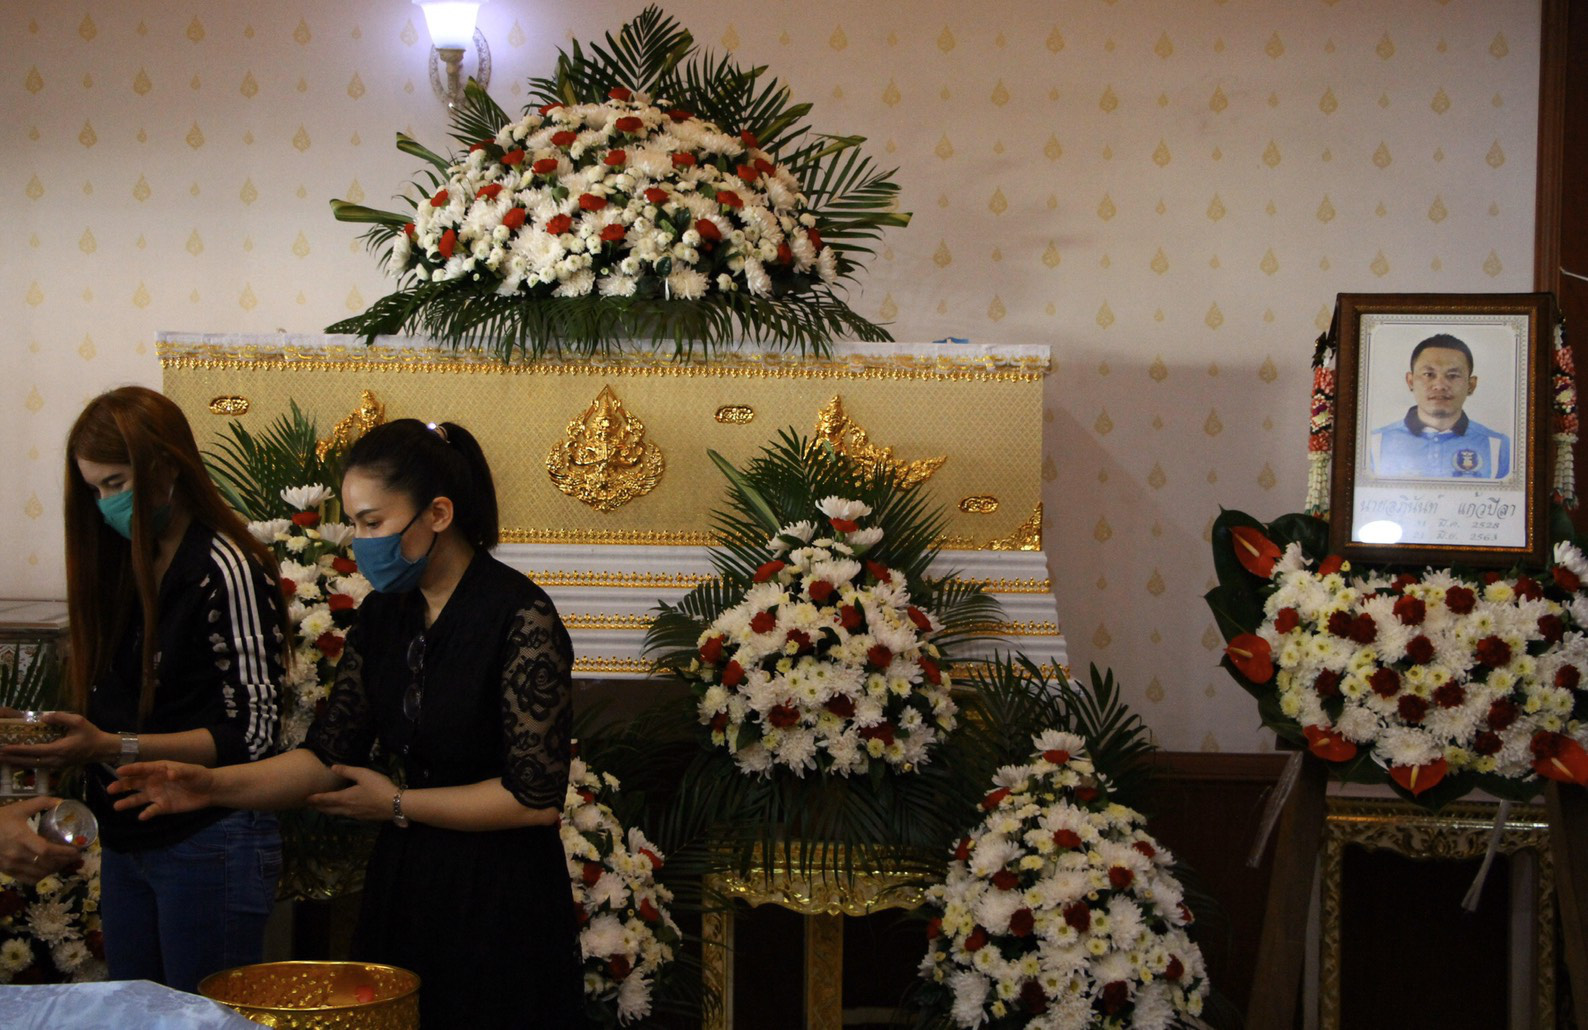 Đau lòng cựu cầu thủ Thái Lan đột ngột qua đời vì tai nạn thảm khốc: Thủ phạm bỏ trốn khỏi hiện trường, gia đình vẫn chưa hết sốc  - Ảnh 2.